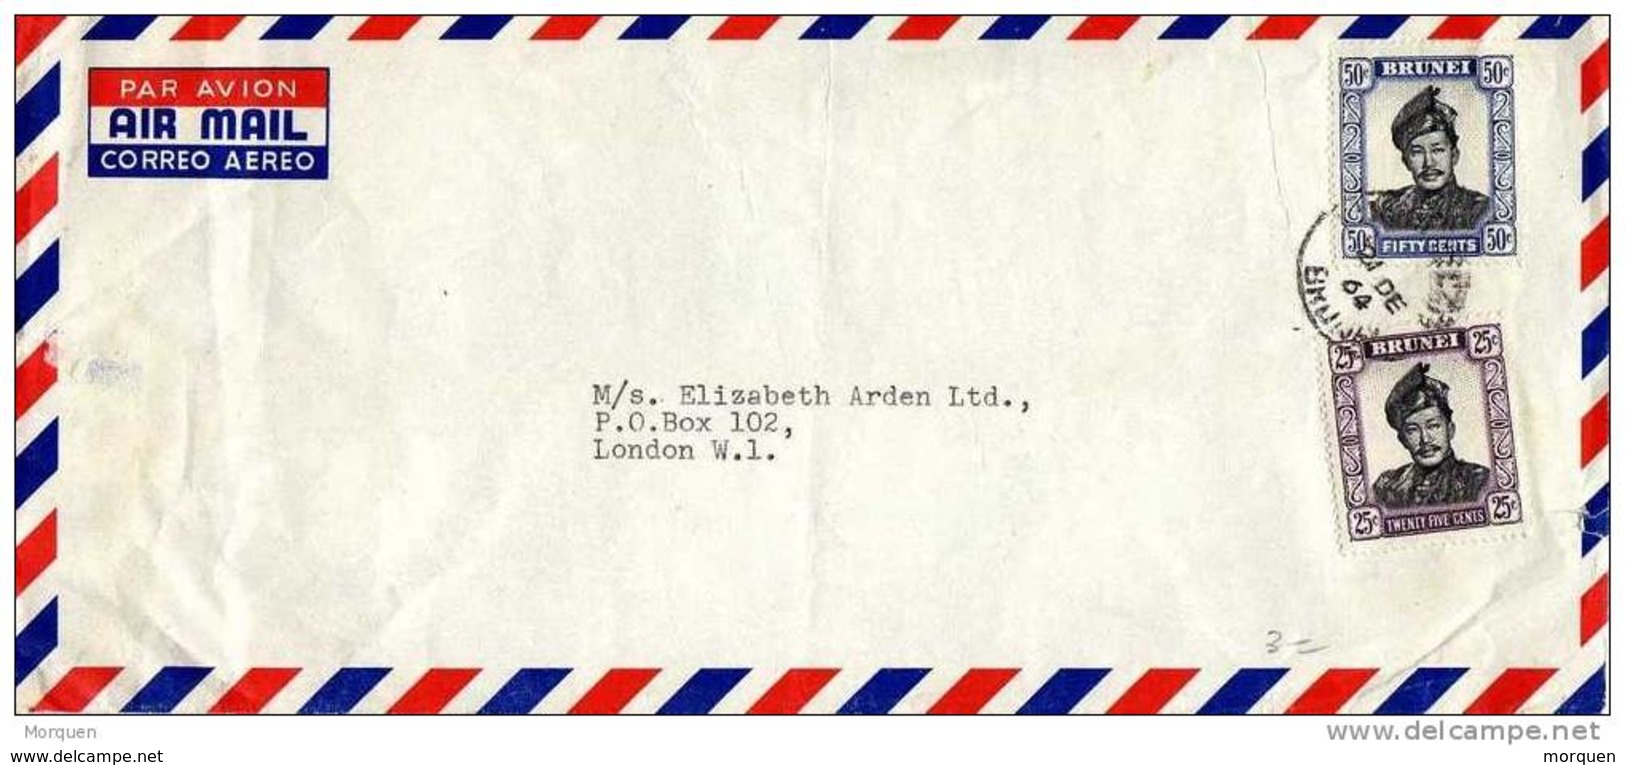 28393. Carta Aerea BRUNEI A Londres  1964 - Brunei (...-1984)